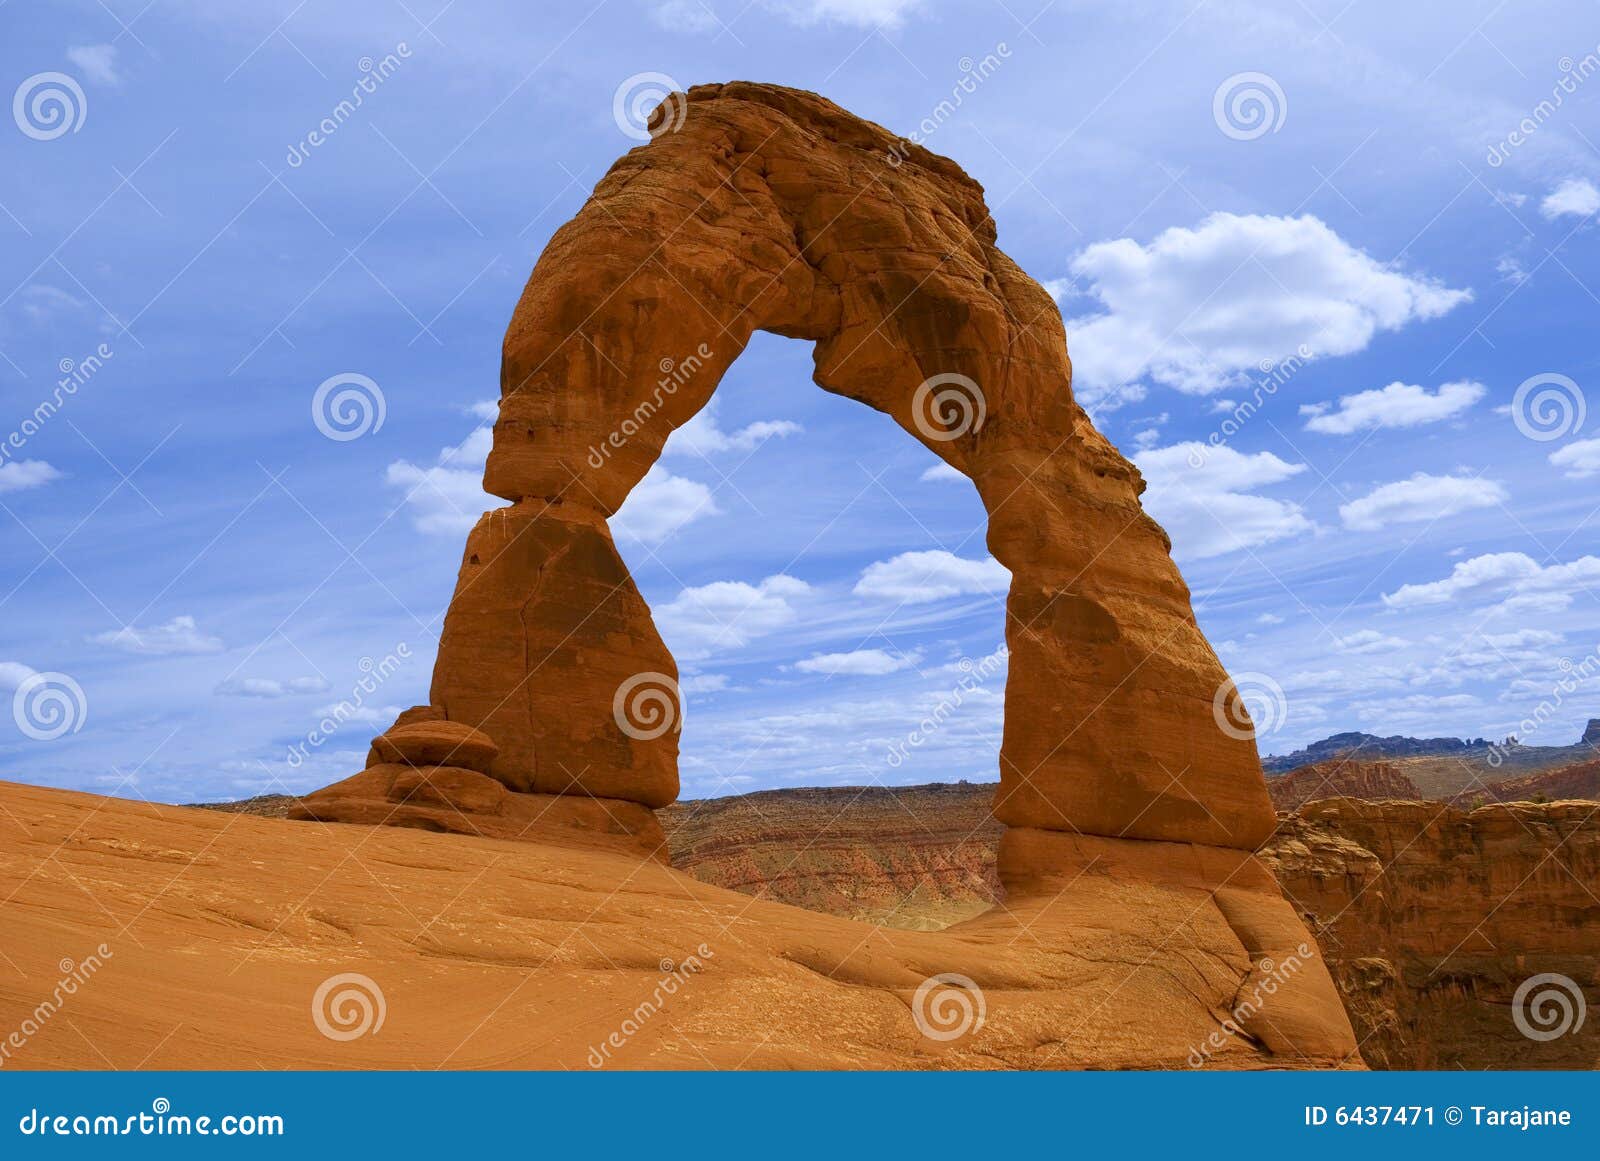 свод чувствительный moab Юта. свод сгабривает чувствительный национальный парк Юту moab